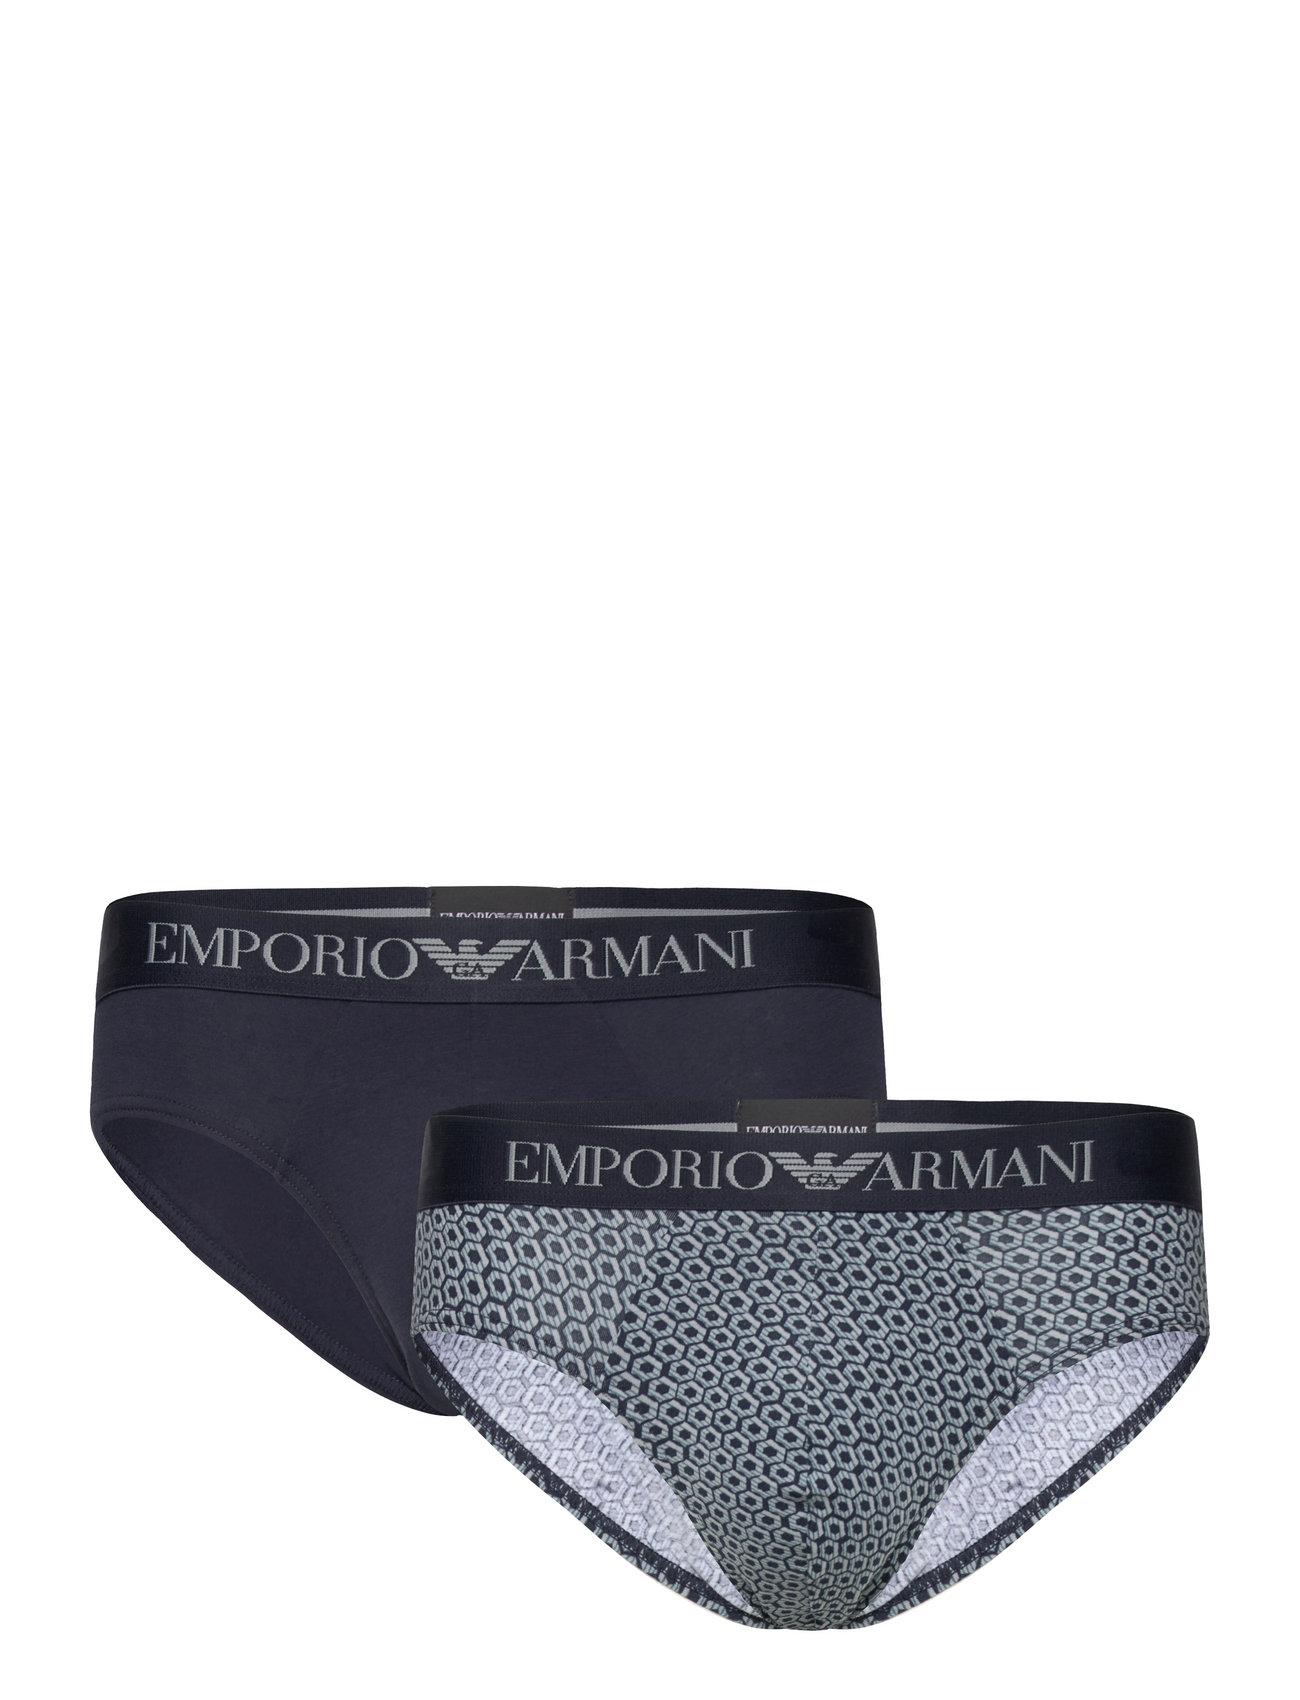 Emporio Armani Men's Knit 2-pack Brief (Esagoni/marine), 204.23 kr af designer | Booztlet.com